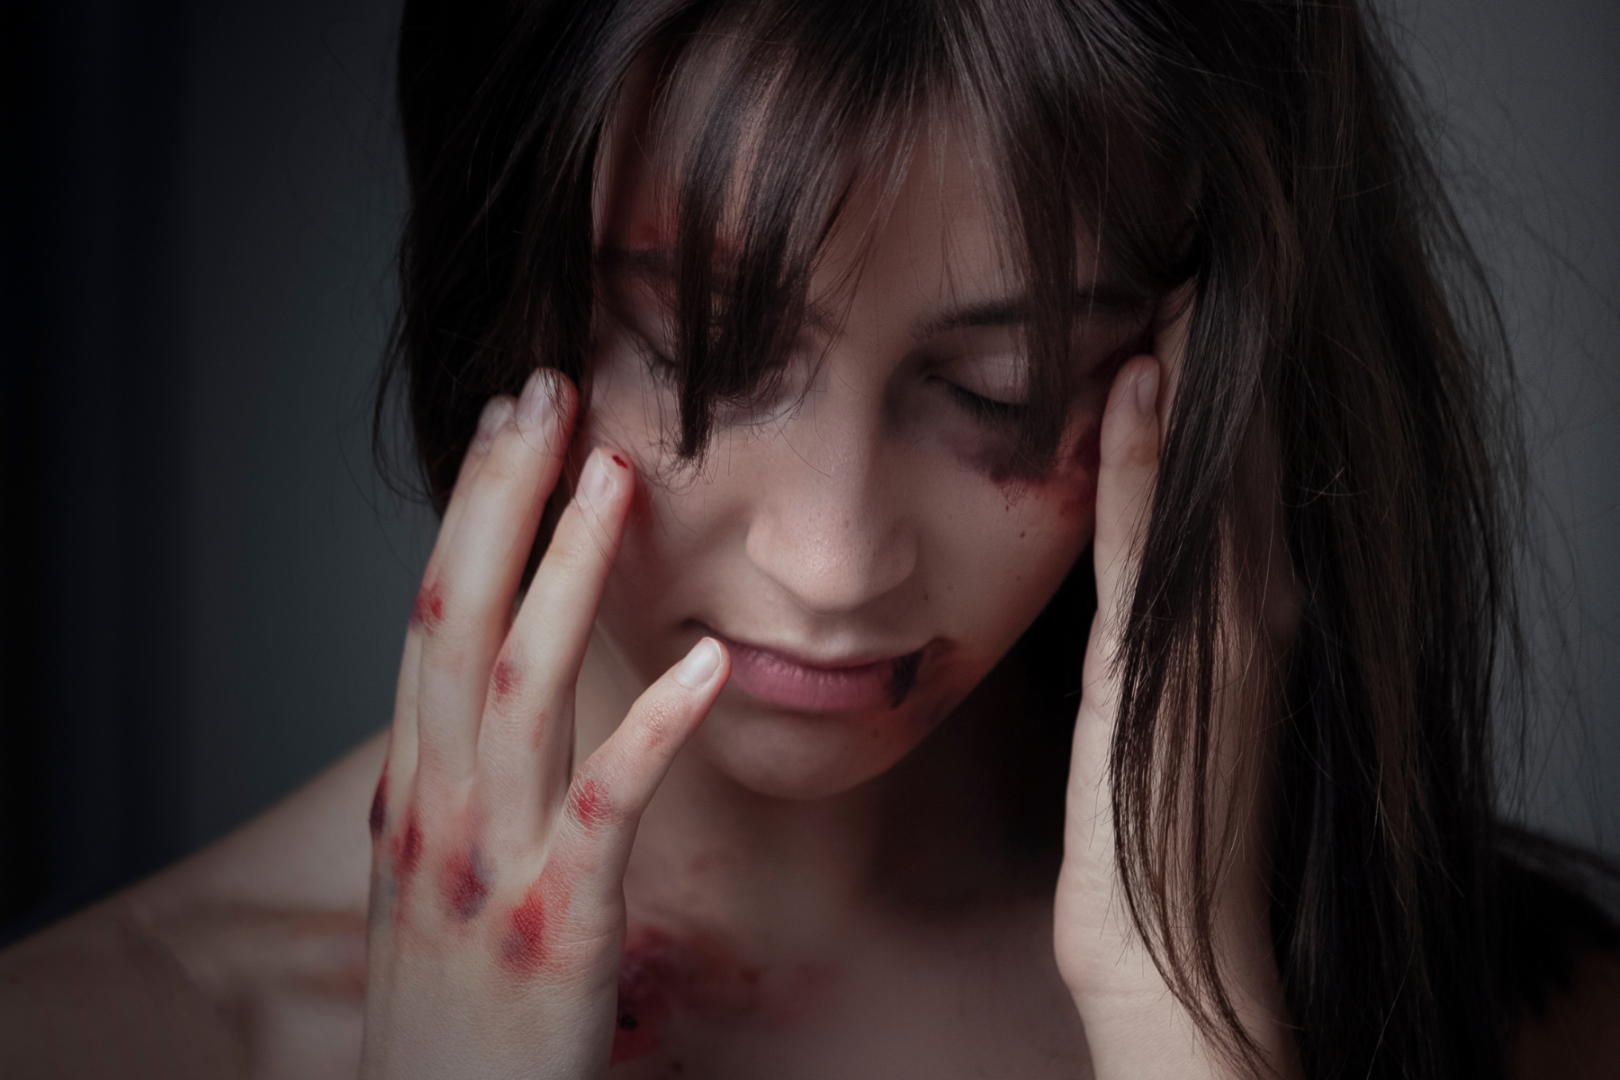 woman bruised self-harm